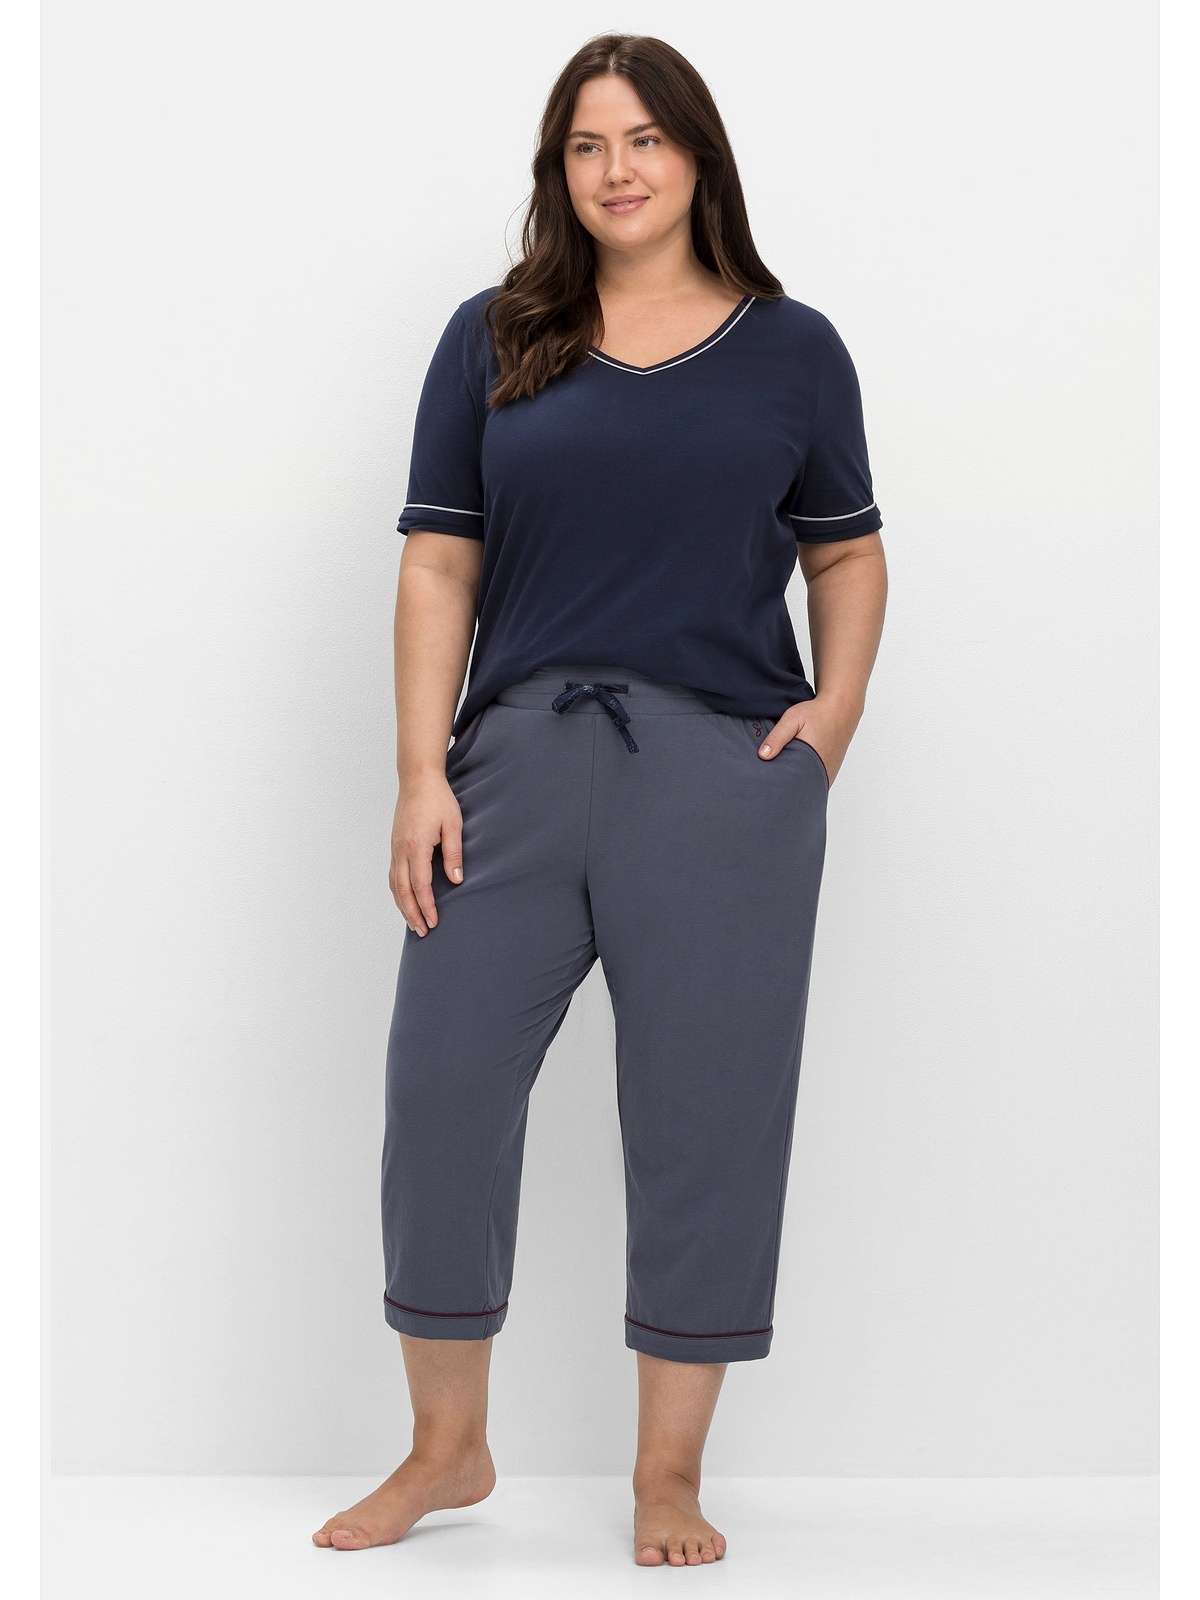 Пижамные брюки с контрастными деталями и боковыми карманами.